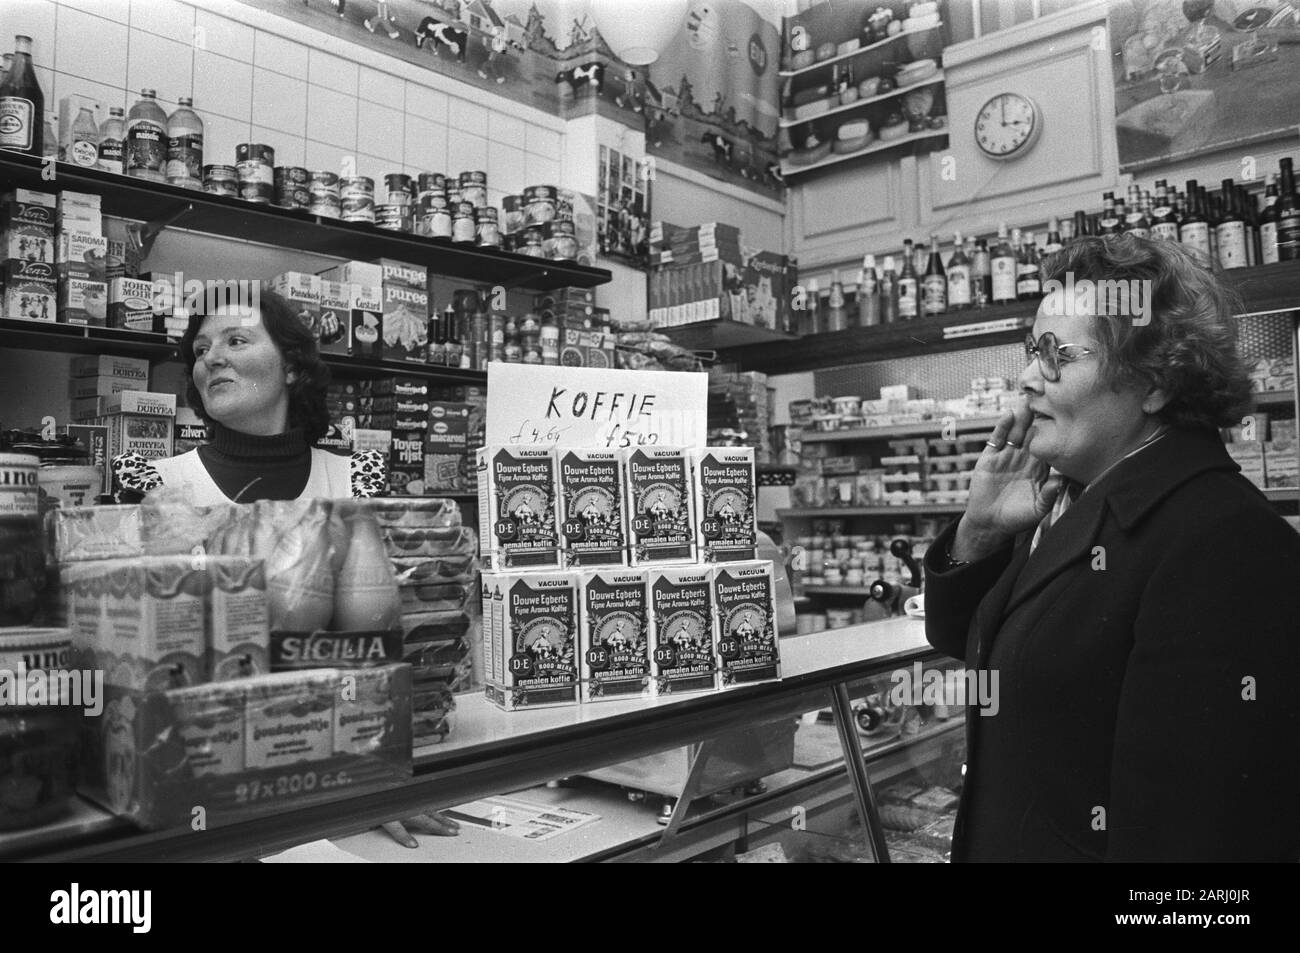 Staunte Reaktion eines Einkaufers auf den Anstieg des Kaffeepreises um 78 Cent Datum: 23. März 1977 Schlüsselwörter: Verbraucher, Kaffee, Kaufkraft, Mittelklasse, Geschäfte Stockfoto